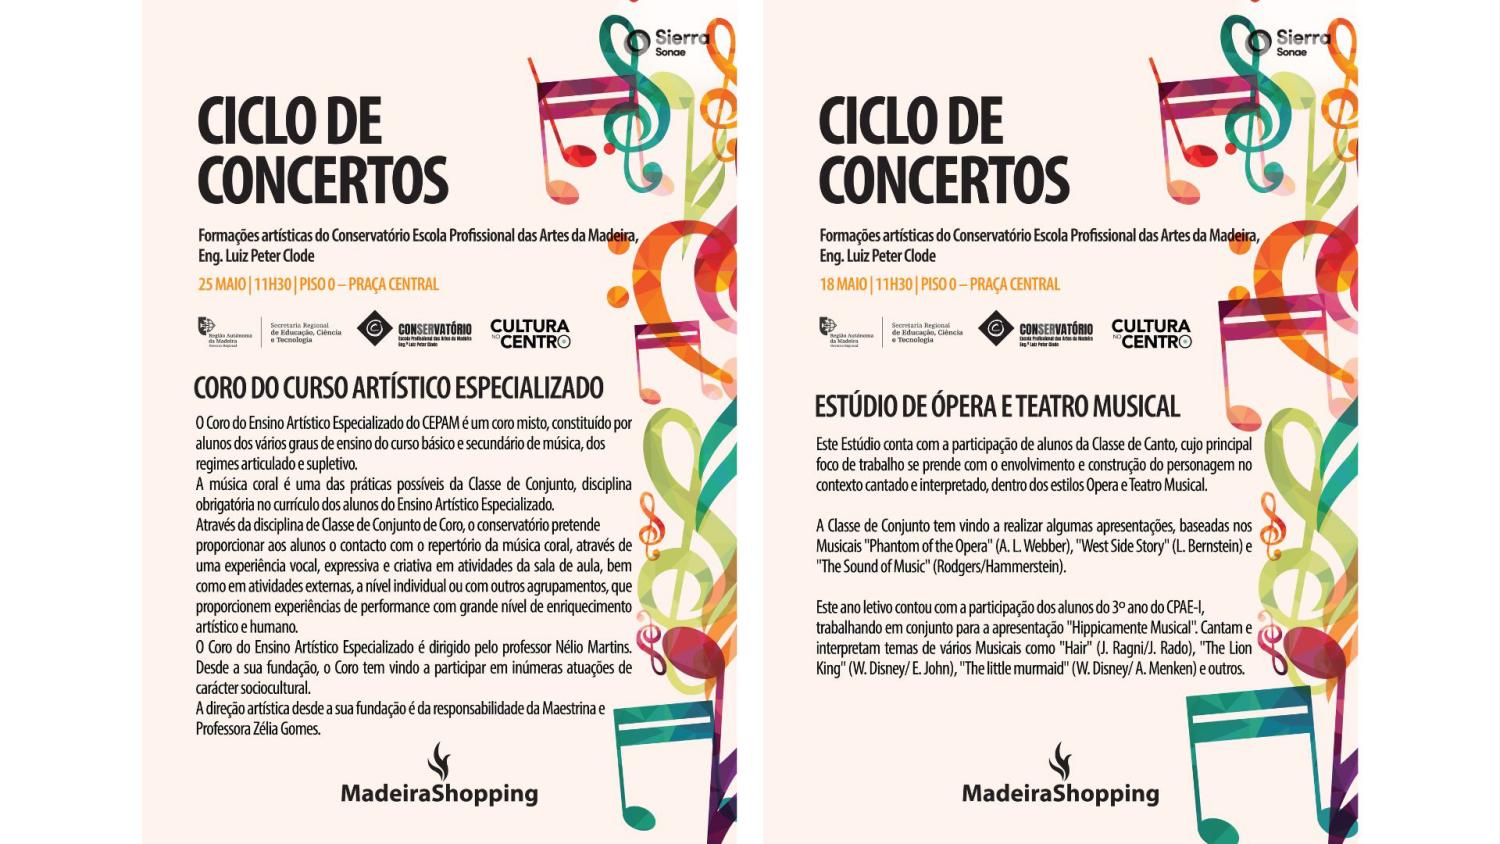 MadeiraShopping recebe as últimas atuações do Ciclo de Concertos do Conservatório